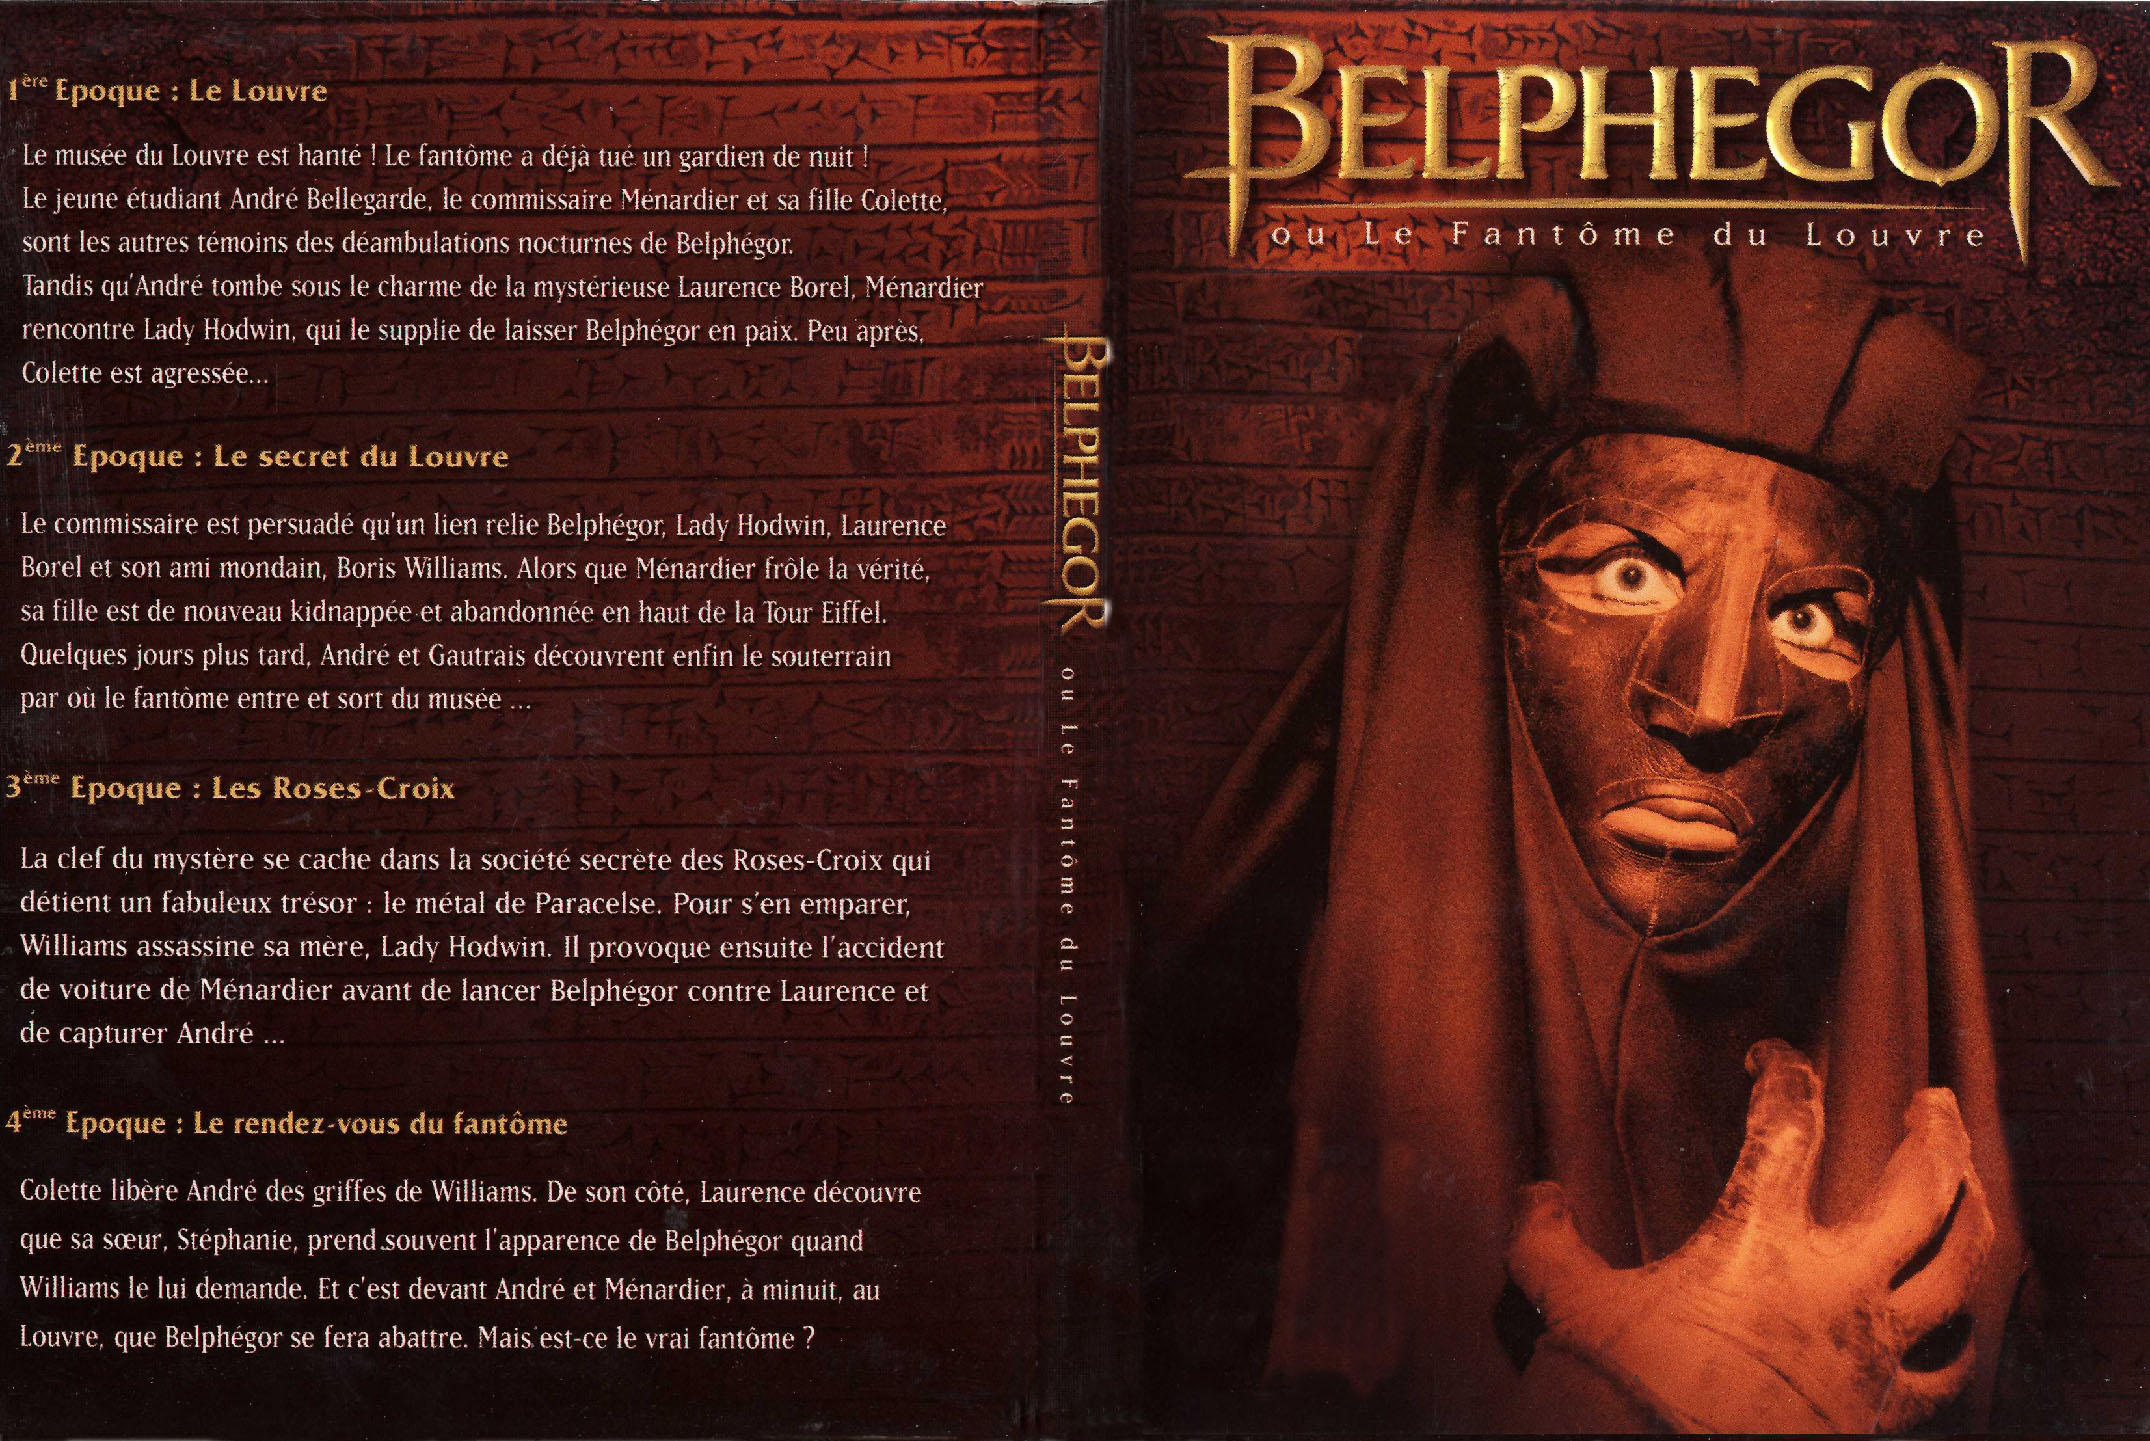 Jaquette DVD Belphegor le fantome du louvre (Srie TV)